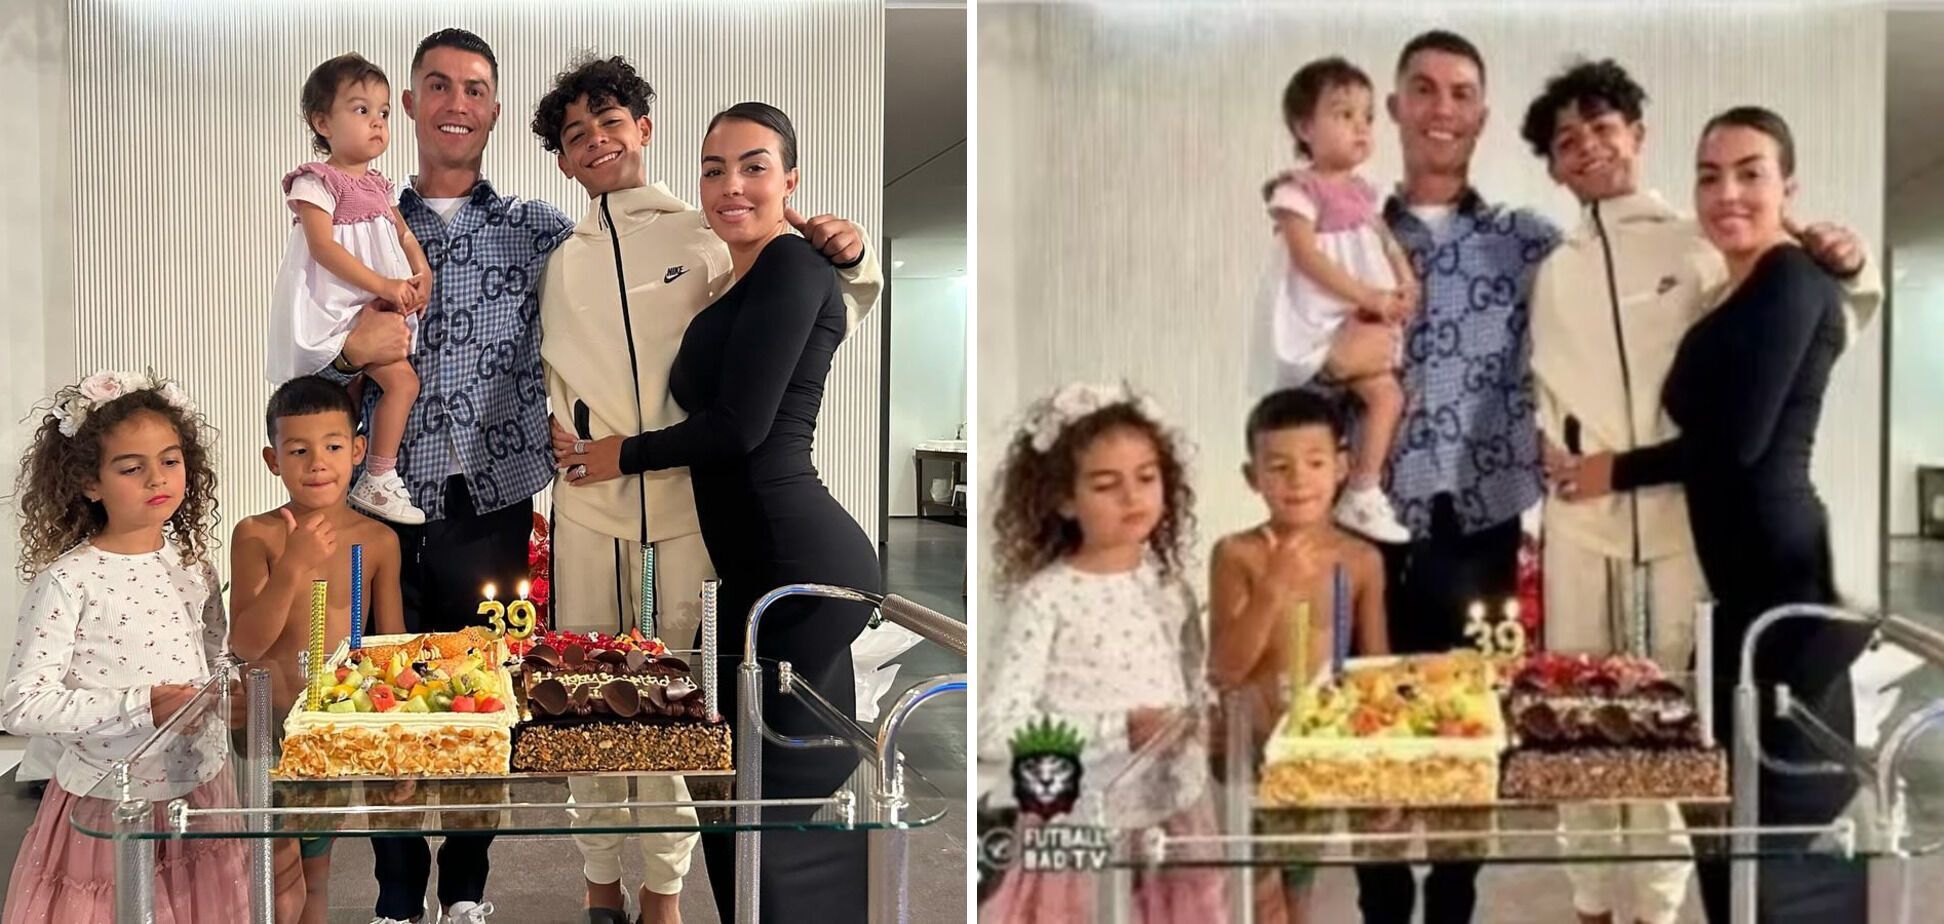 Іранська газета "відрізала" пишні сідниці нареченої Кріштіану Роналду на сімейній світлині. Фото до і після